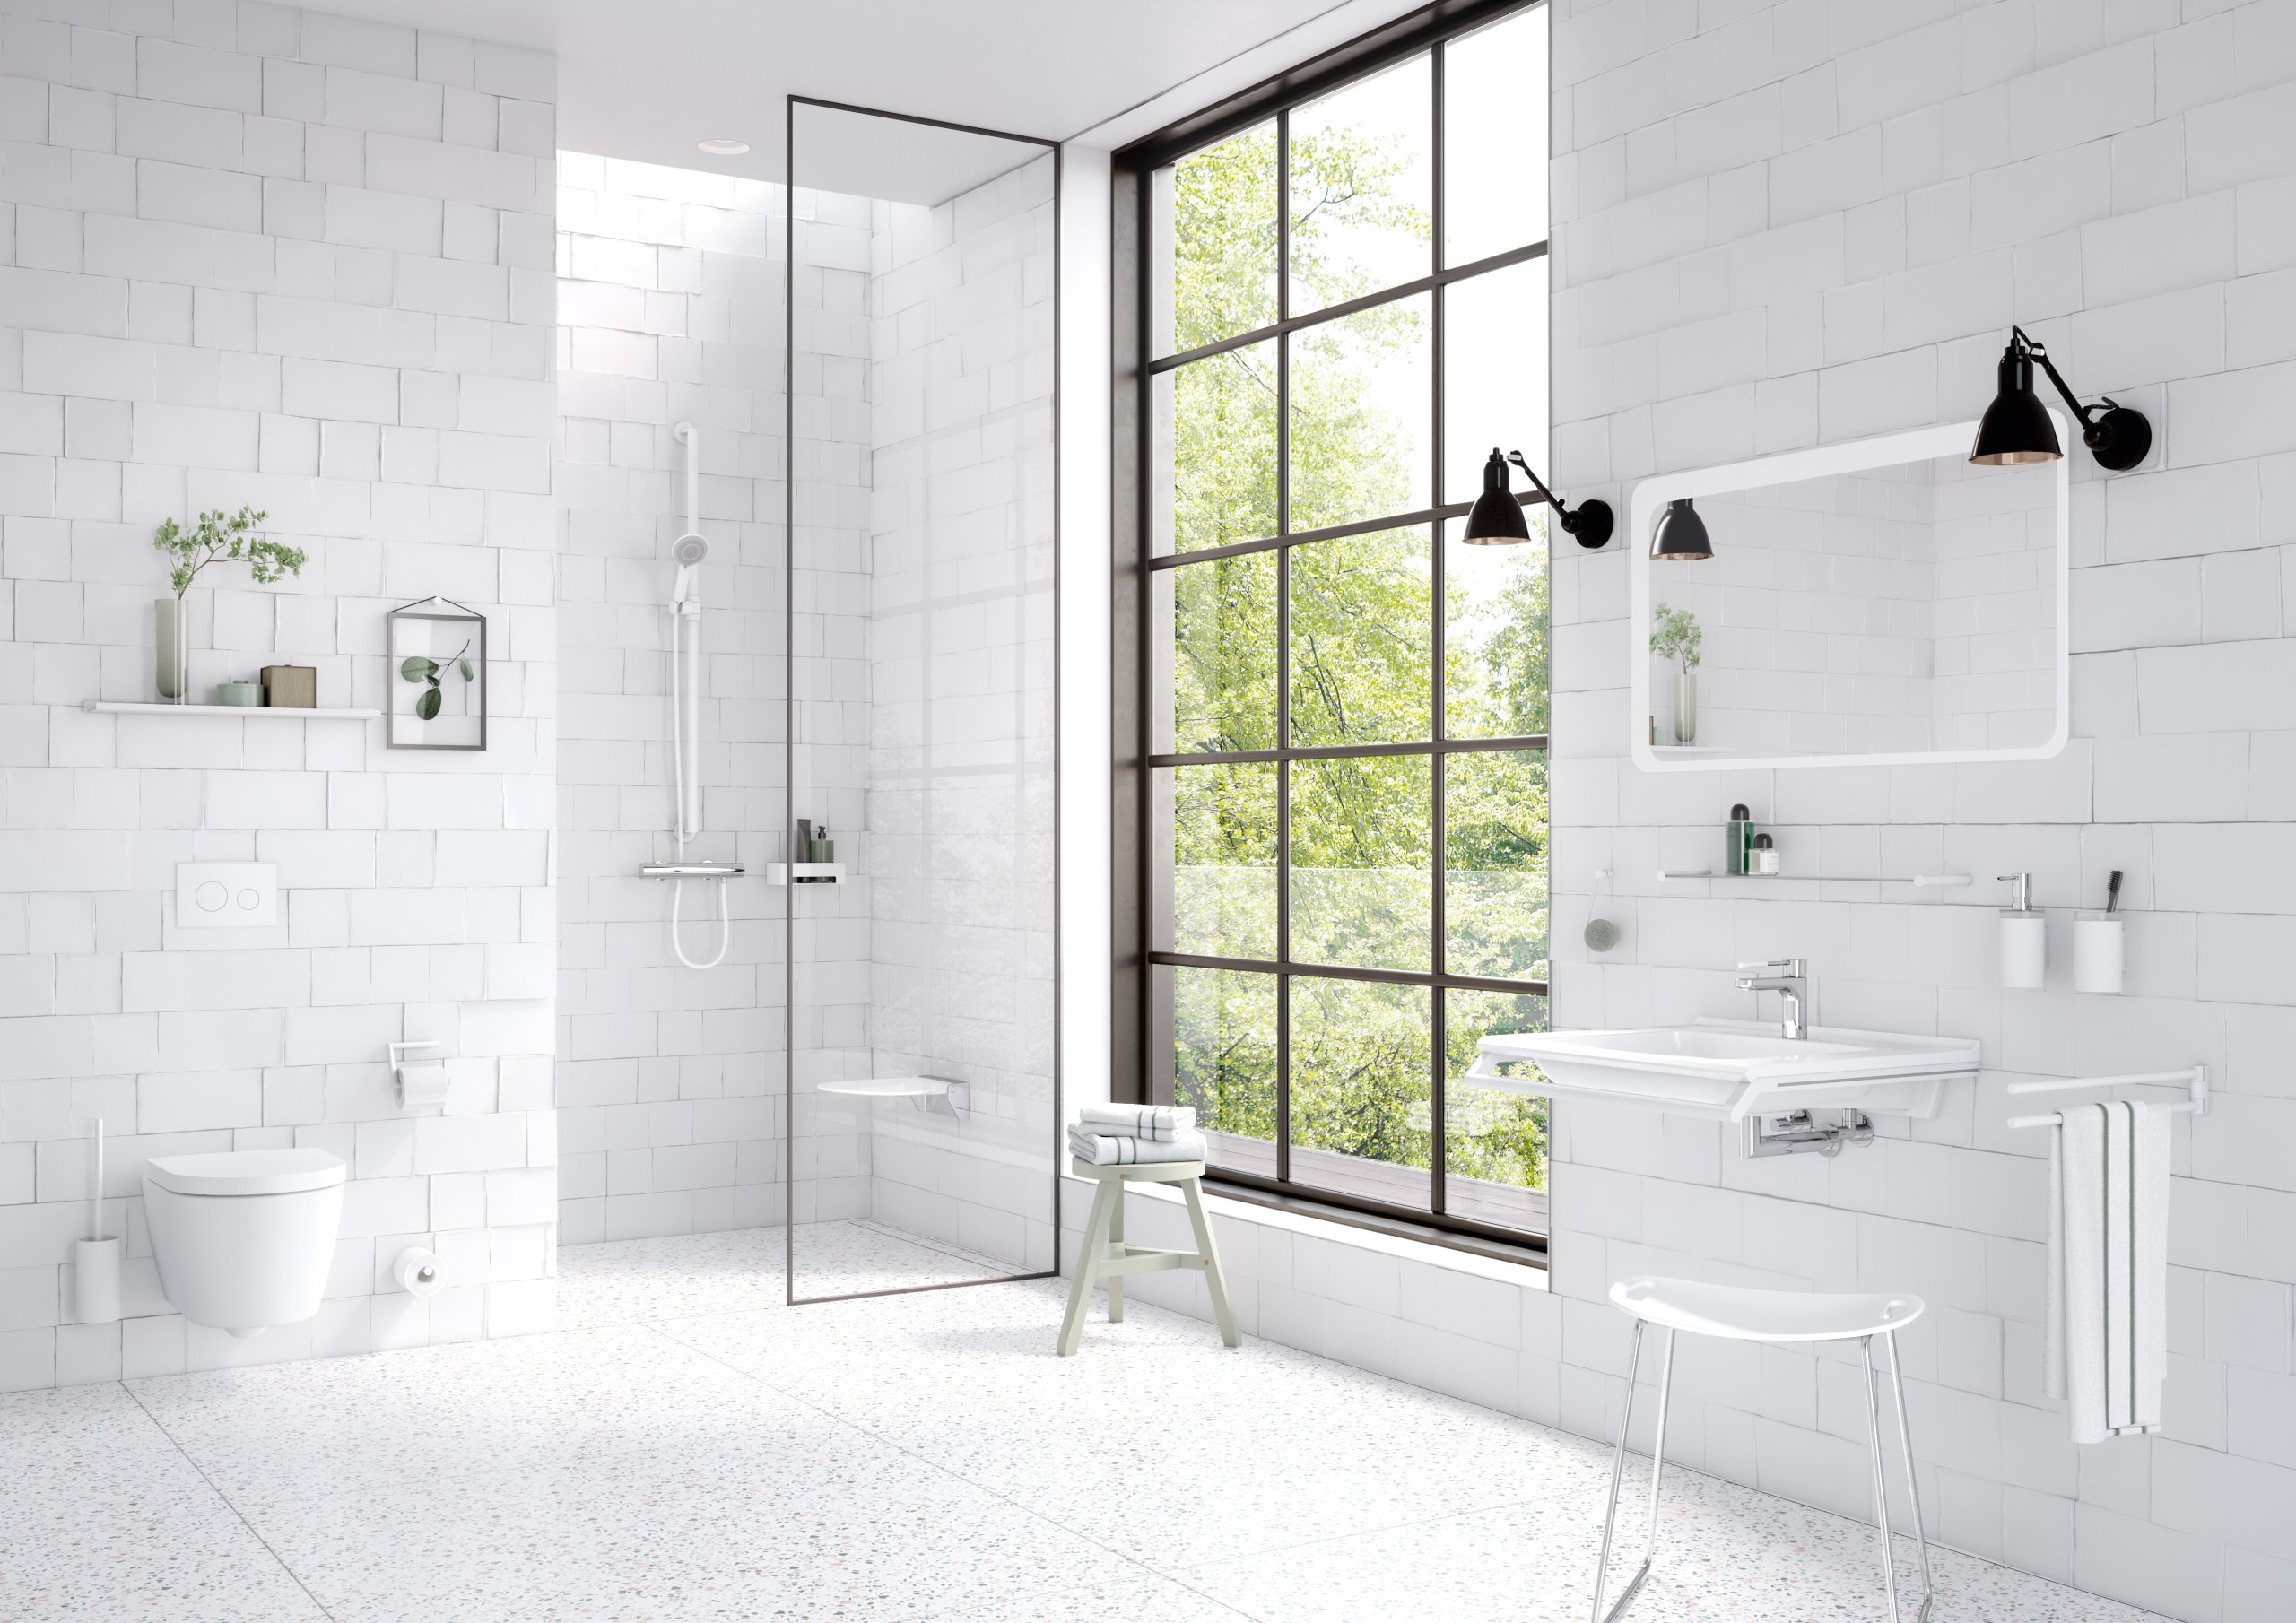 Bad, ausgestattet mit Sanitäraccessoires wie Handtuchhalter, Seifenspender, Toilettenpapierhalter in der Farbe Weiß matt